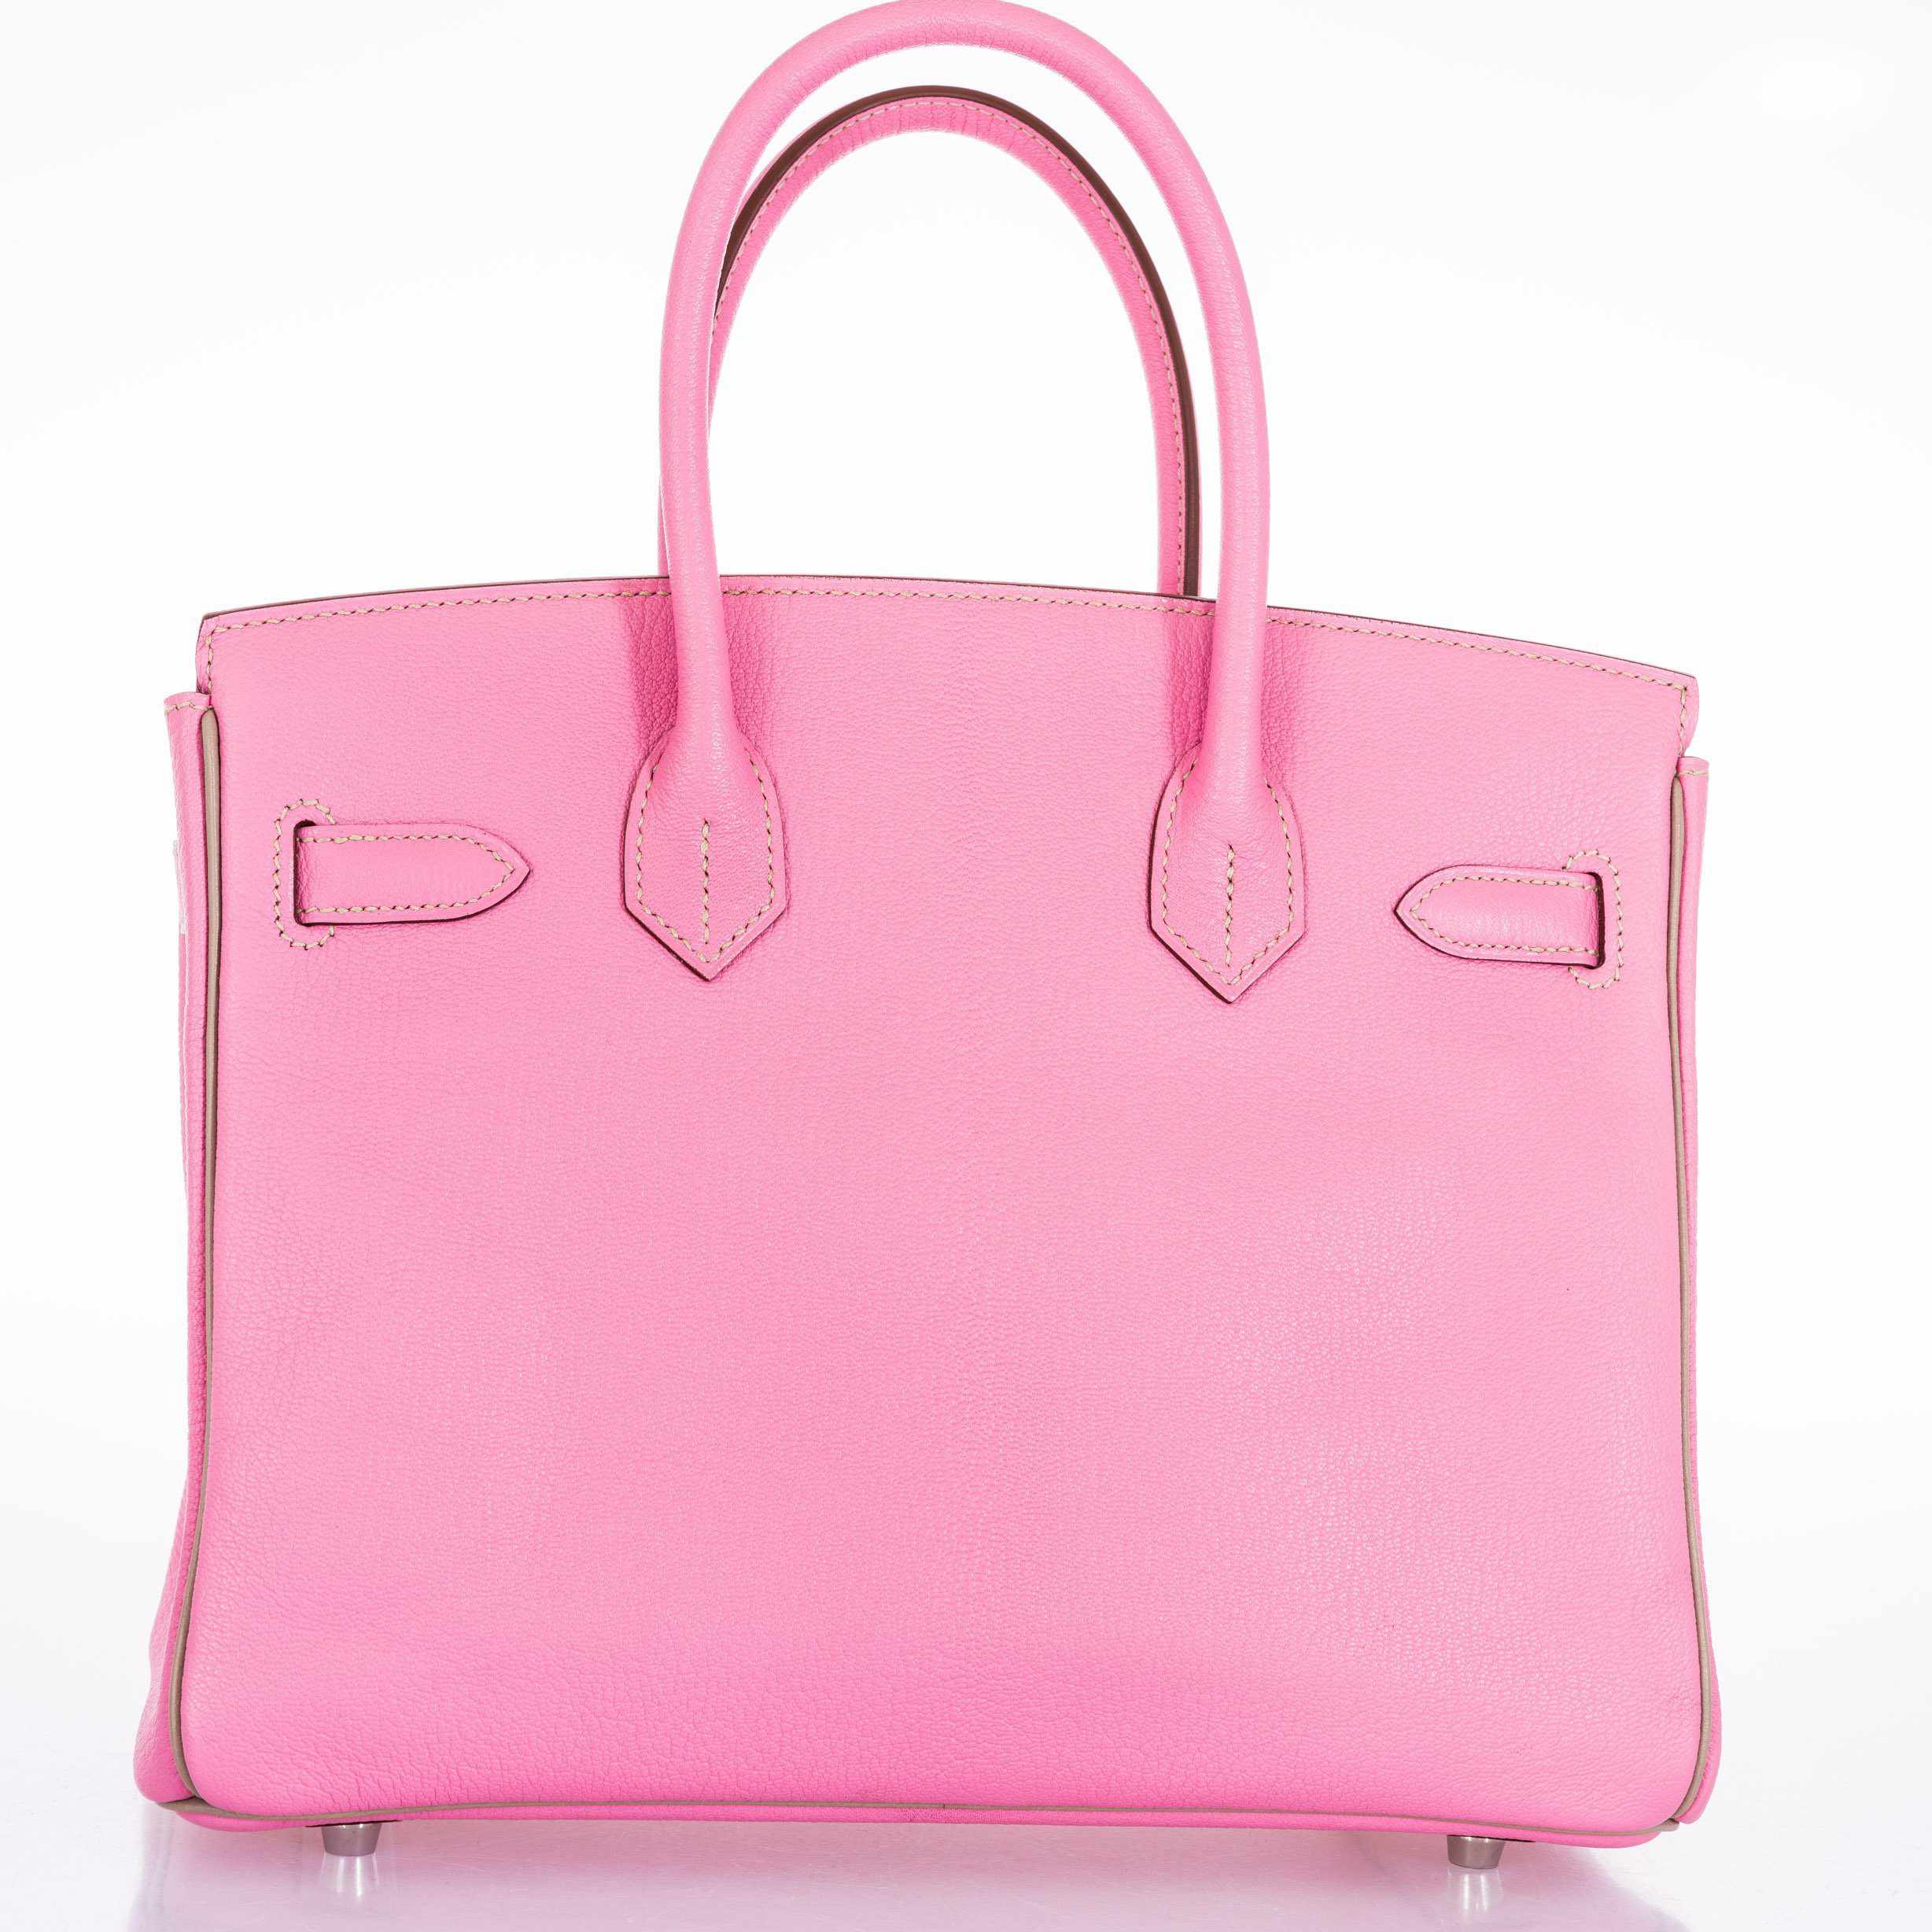 Hermès Birkin 30 HSS Bubblegum Pink And Gris Tourterelle Chevre Palladium Hardware